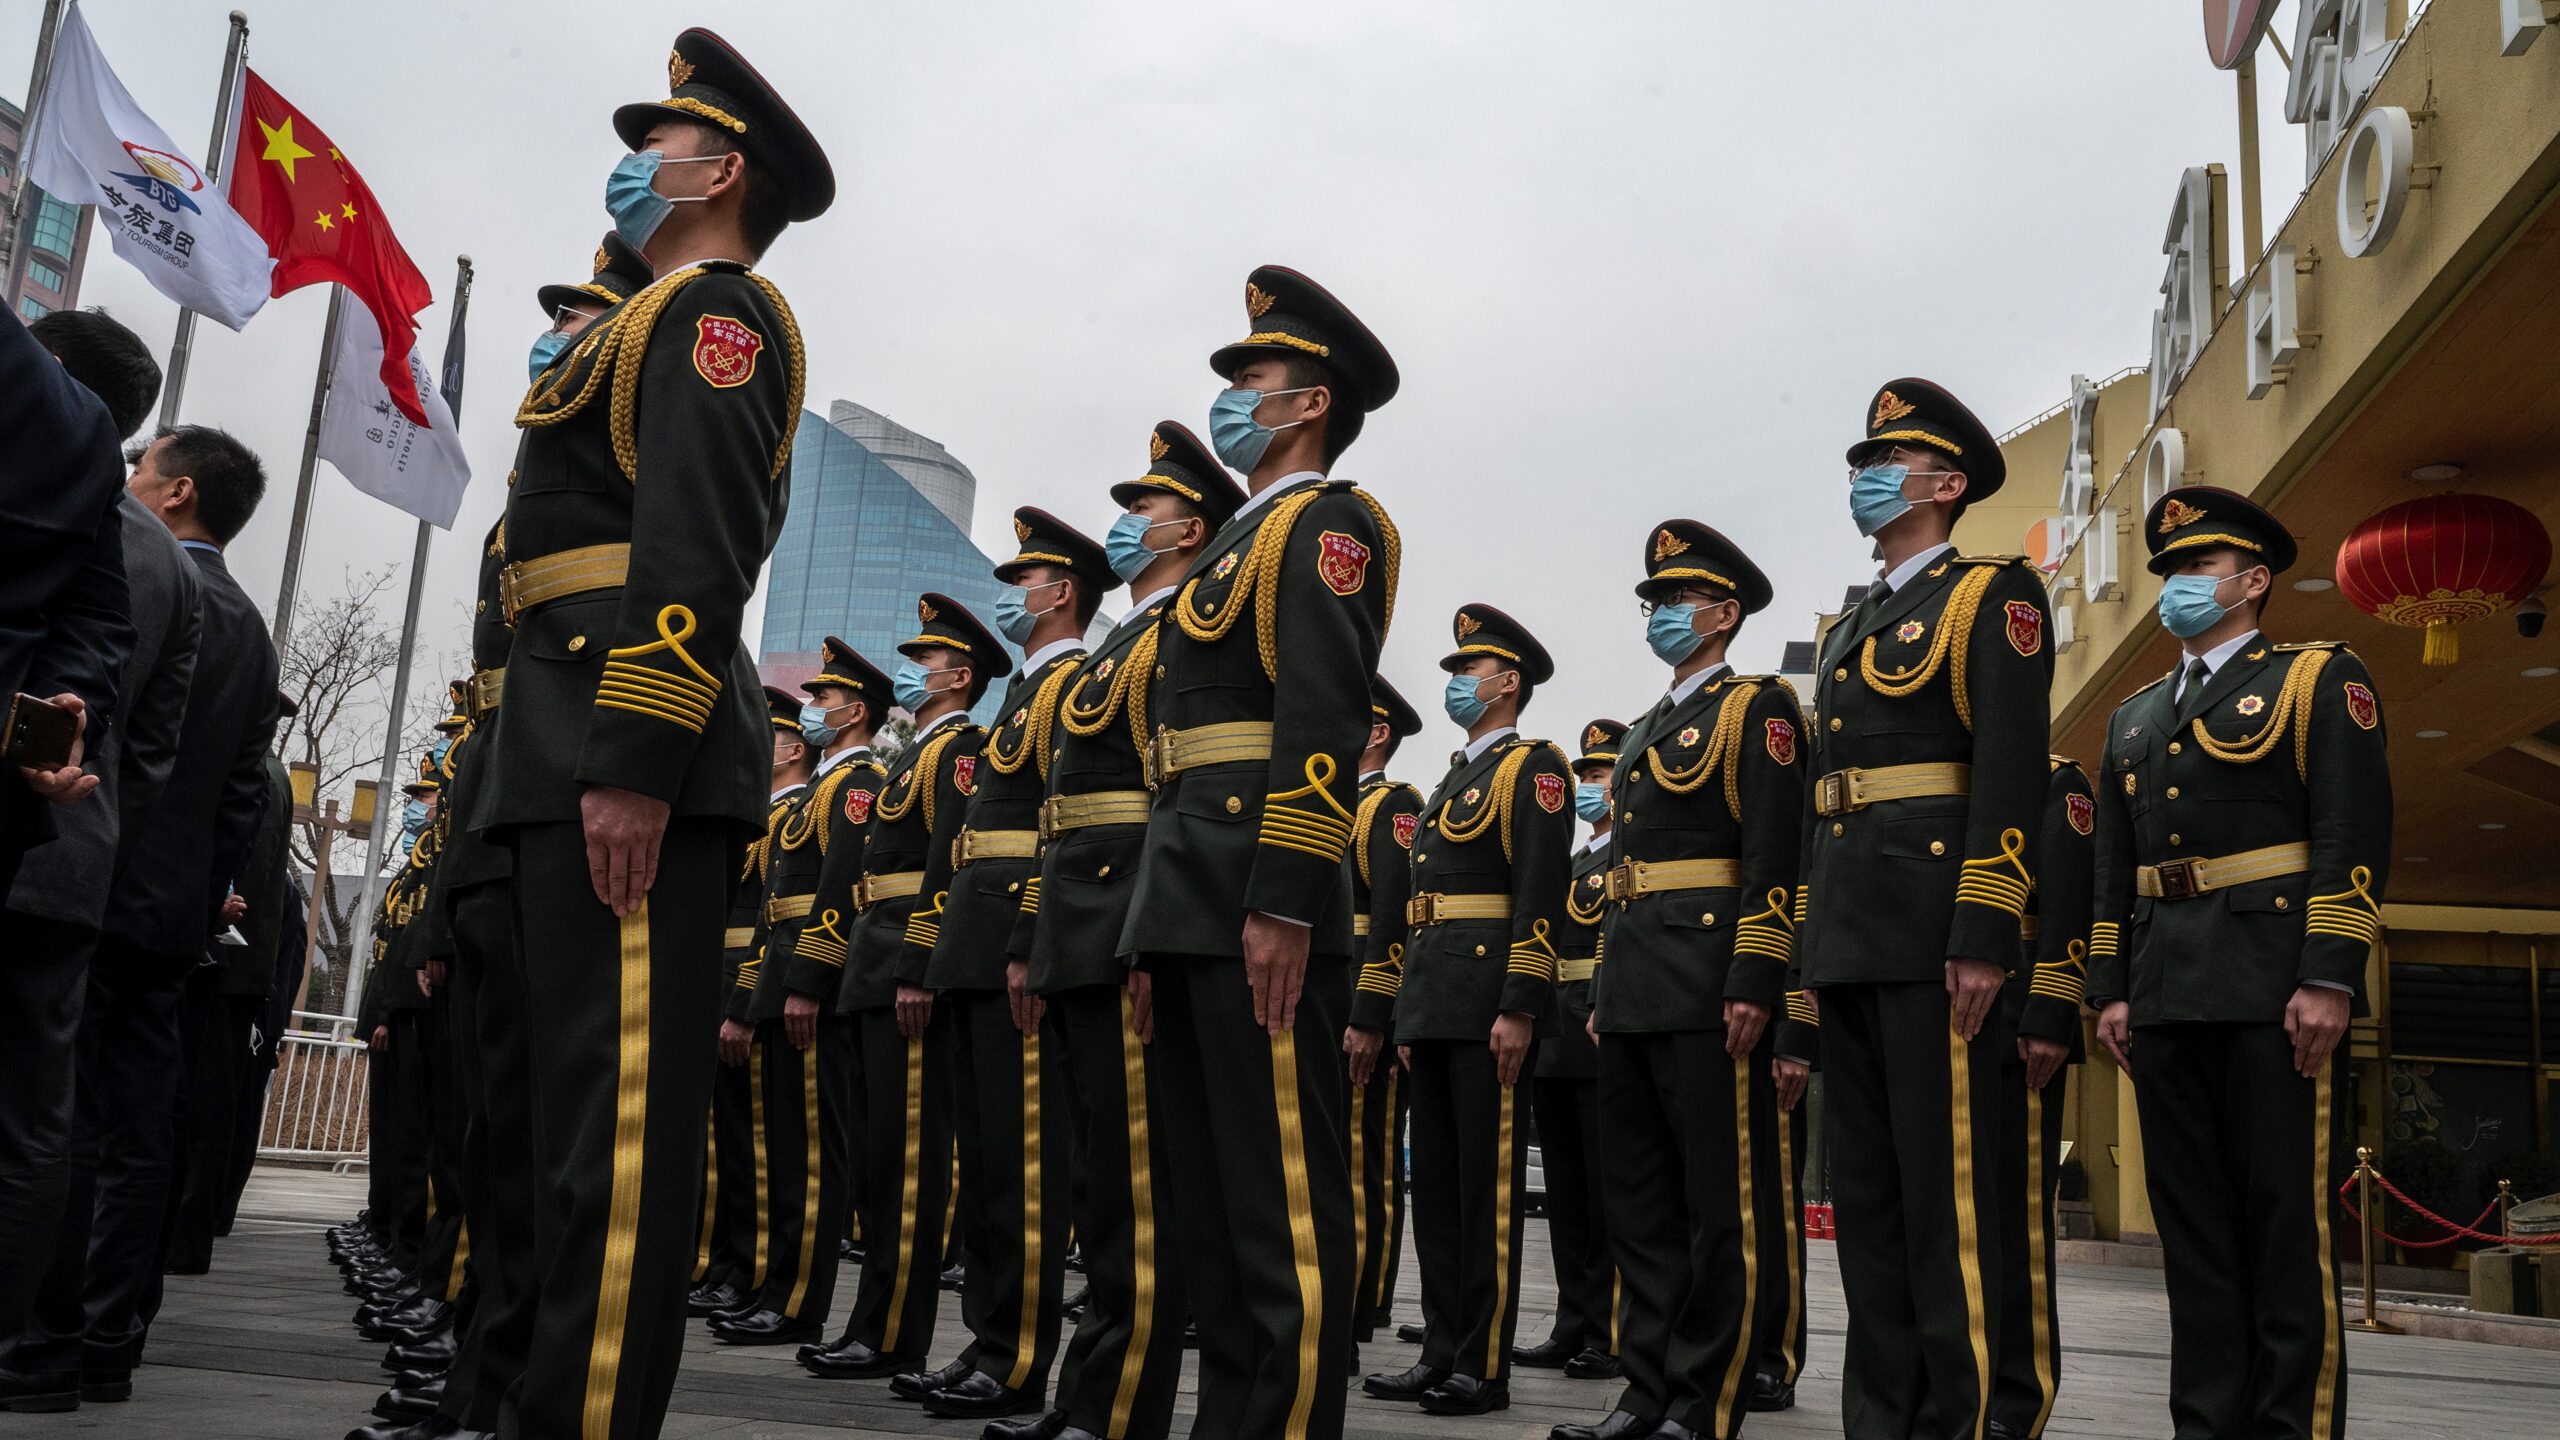 chinese military power